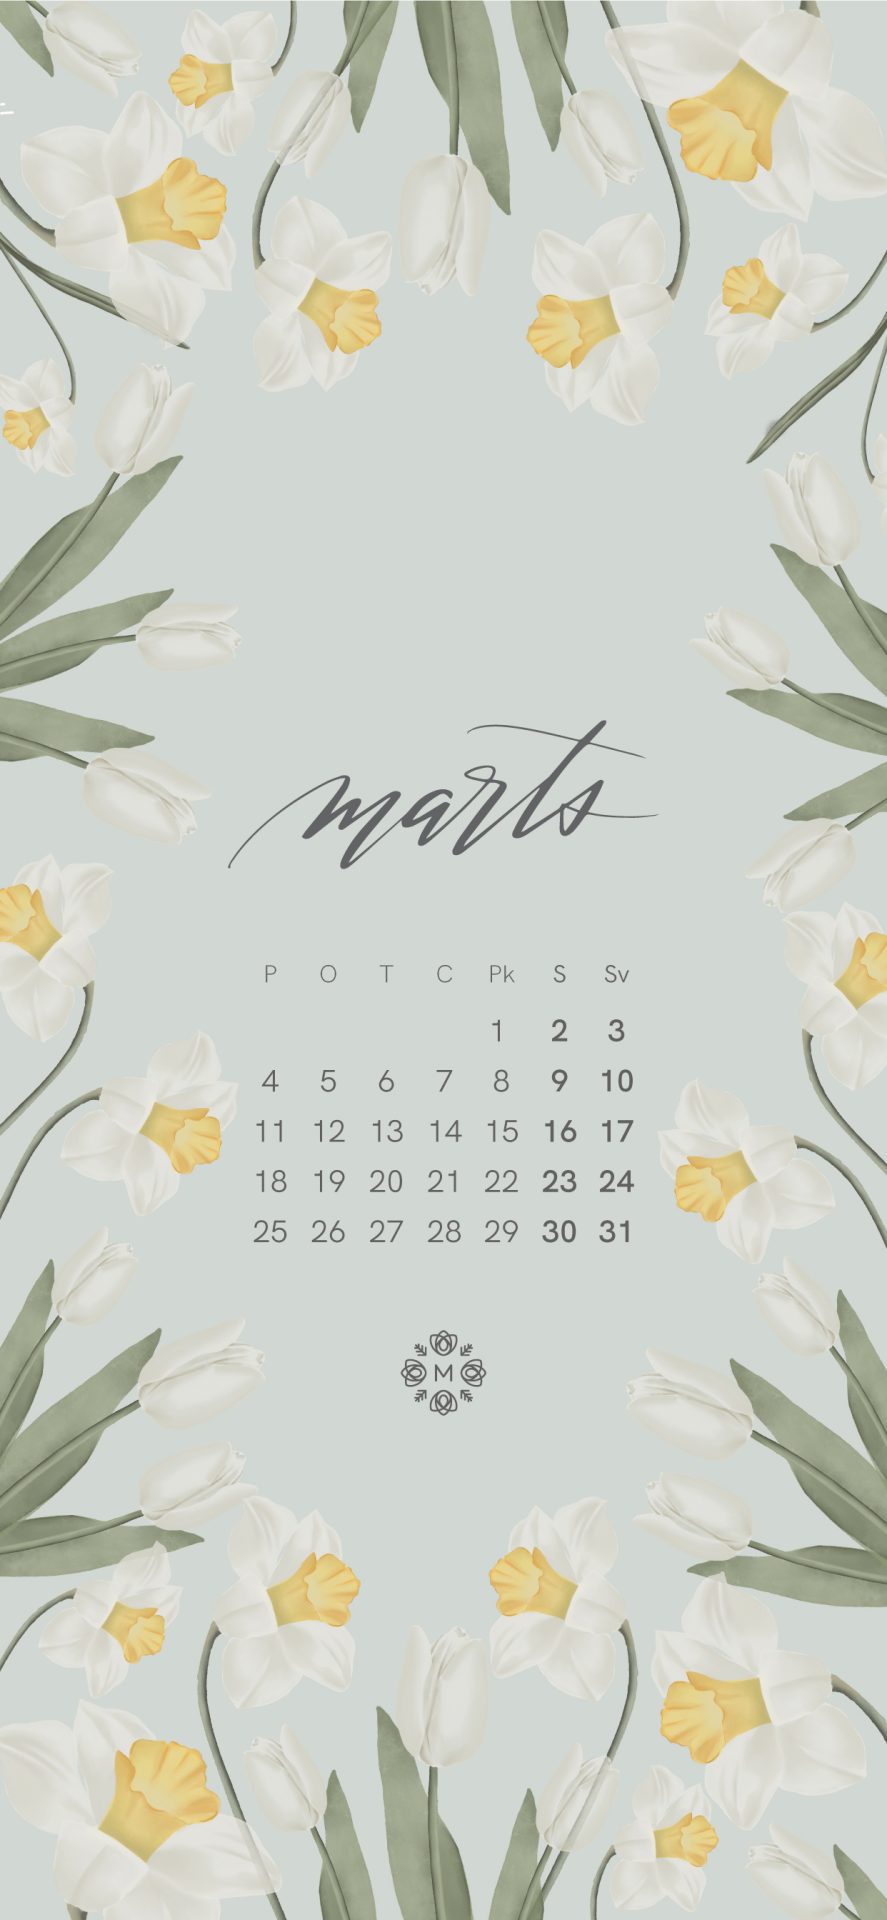 Manilla Marta mēneša kalendāra attēli